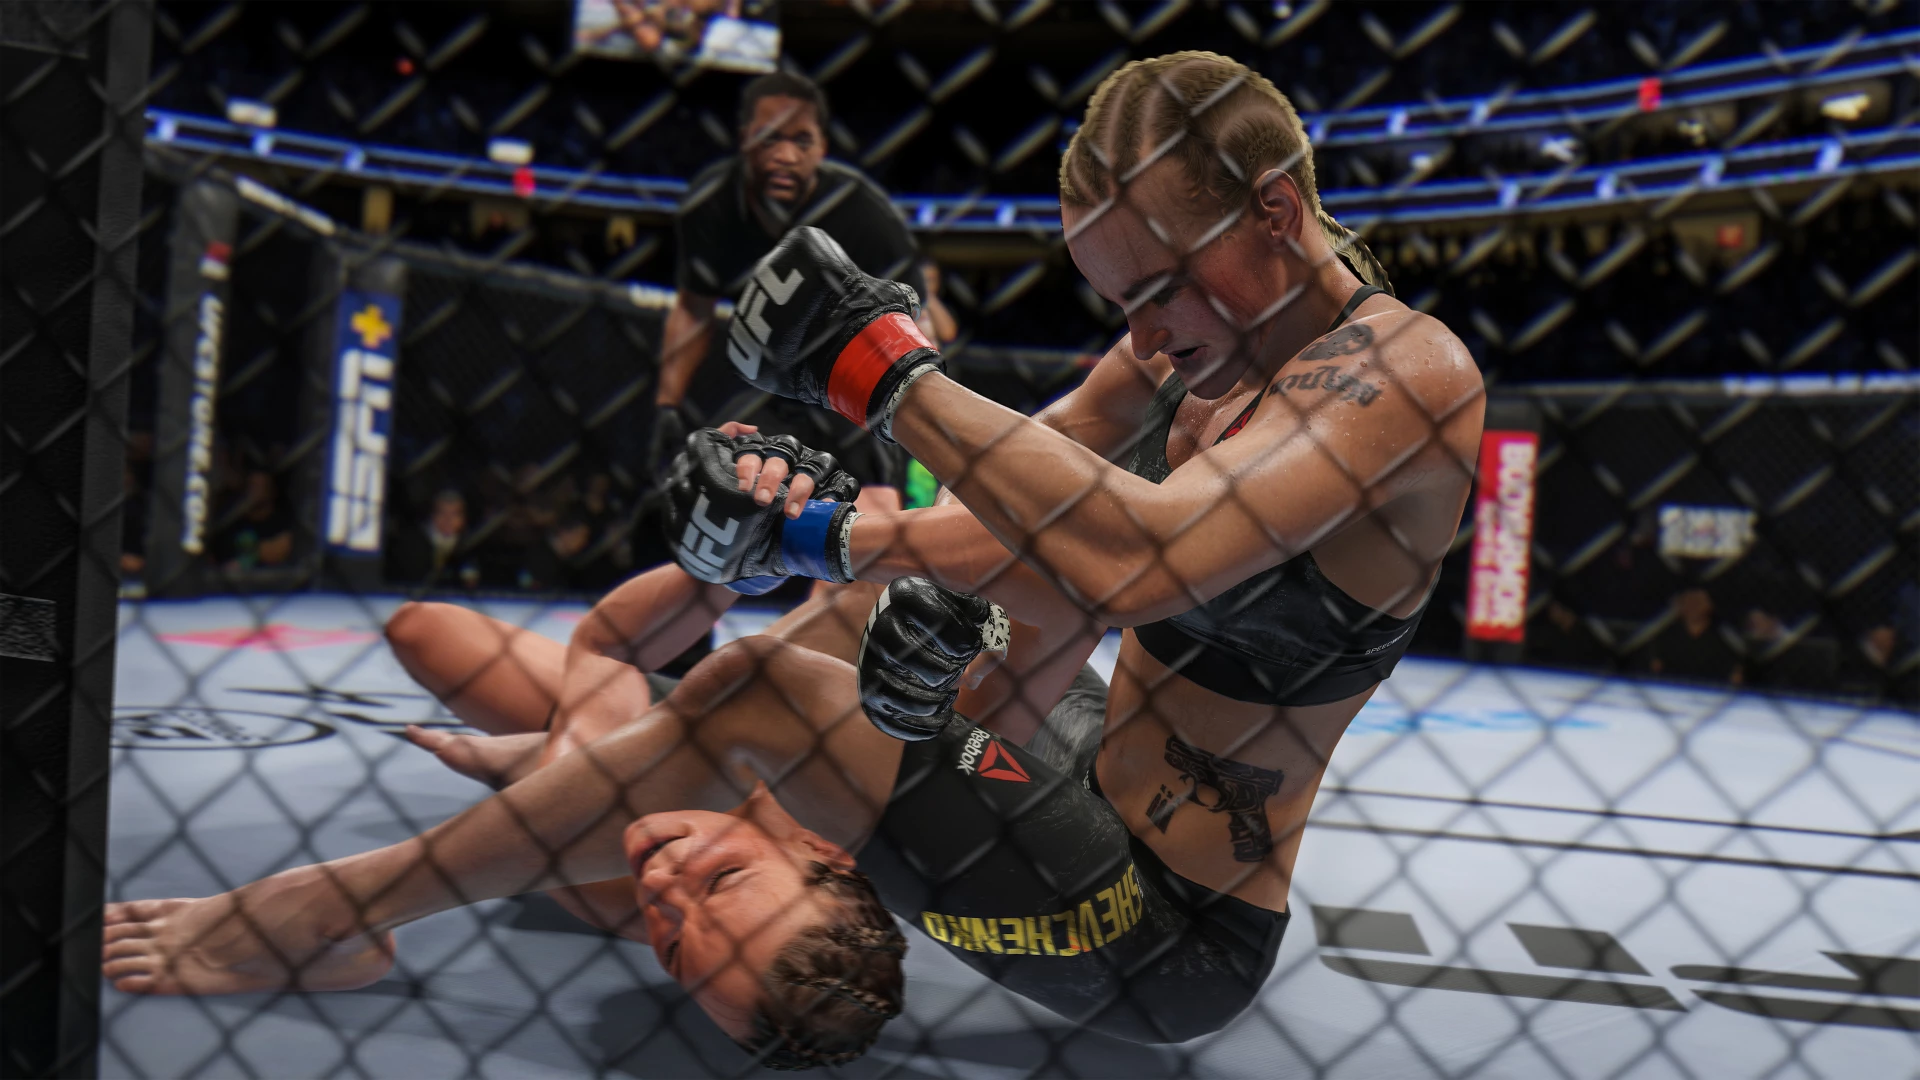 EA Sports UFC 4 voor de PlayStation 4 kopen op nedgame.nl